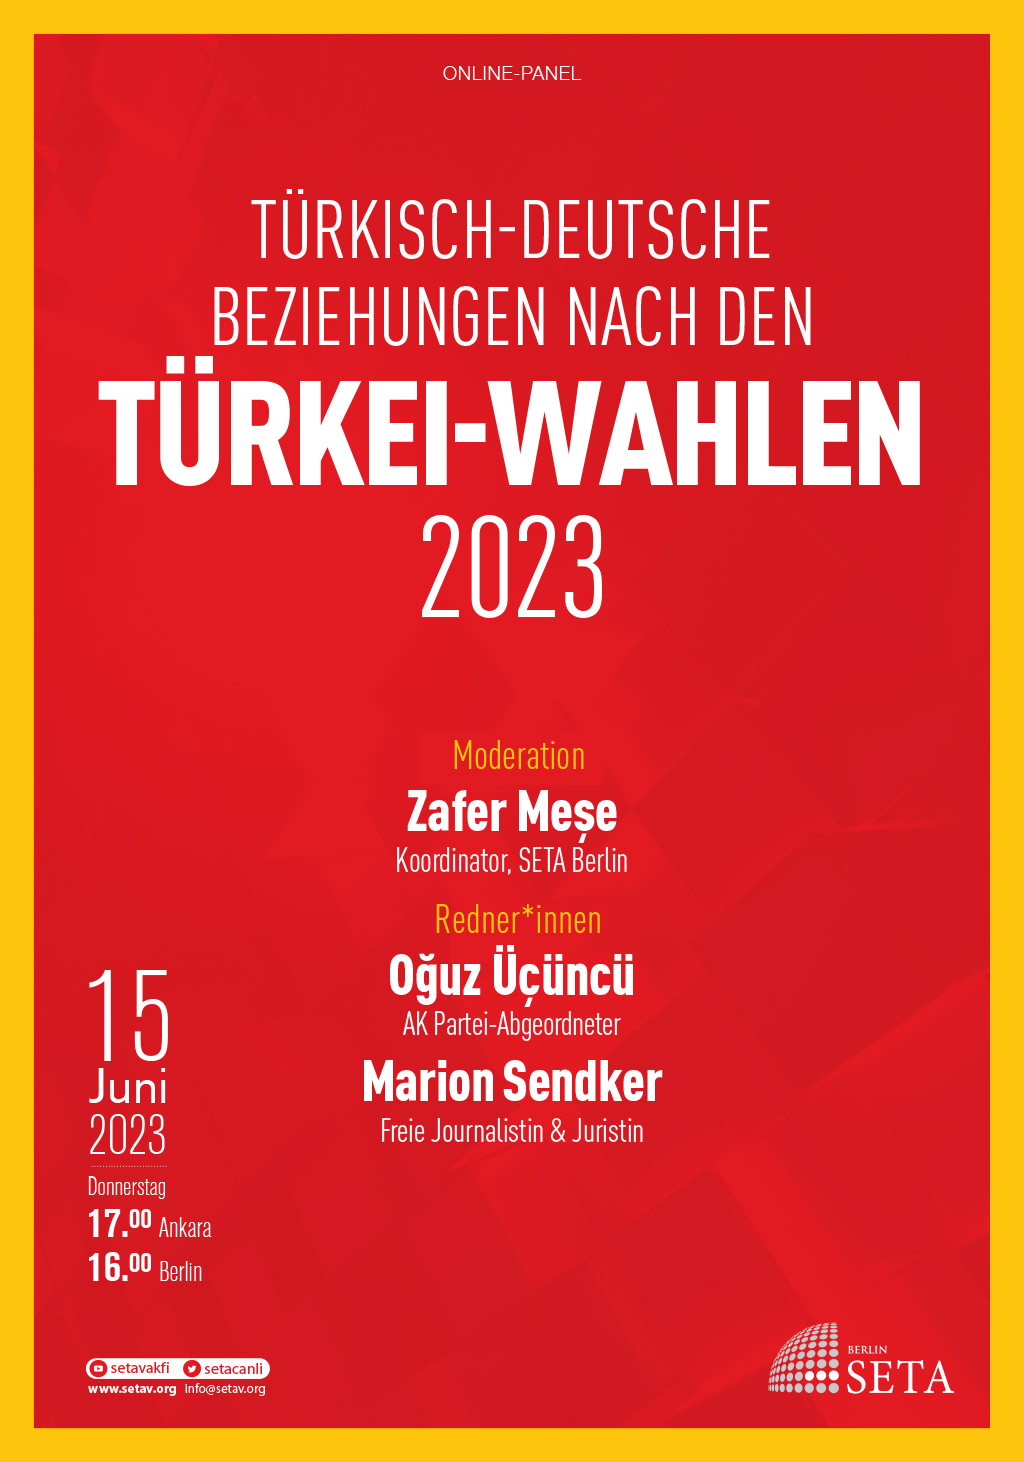 Online-Panel: Türkisch-Deutsche Beziehungen nach den Türkei-Wahlen 2023